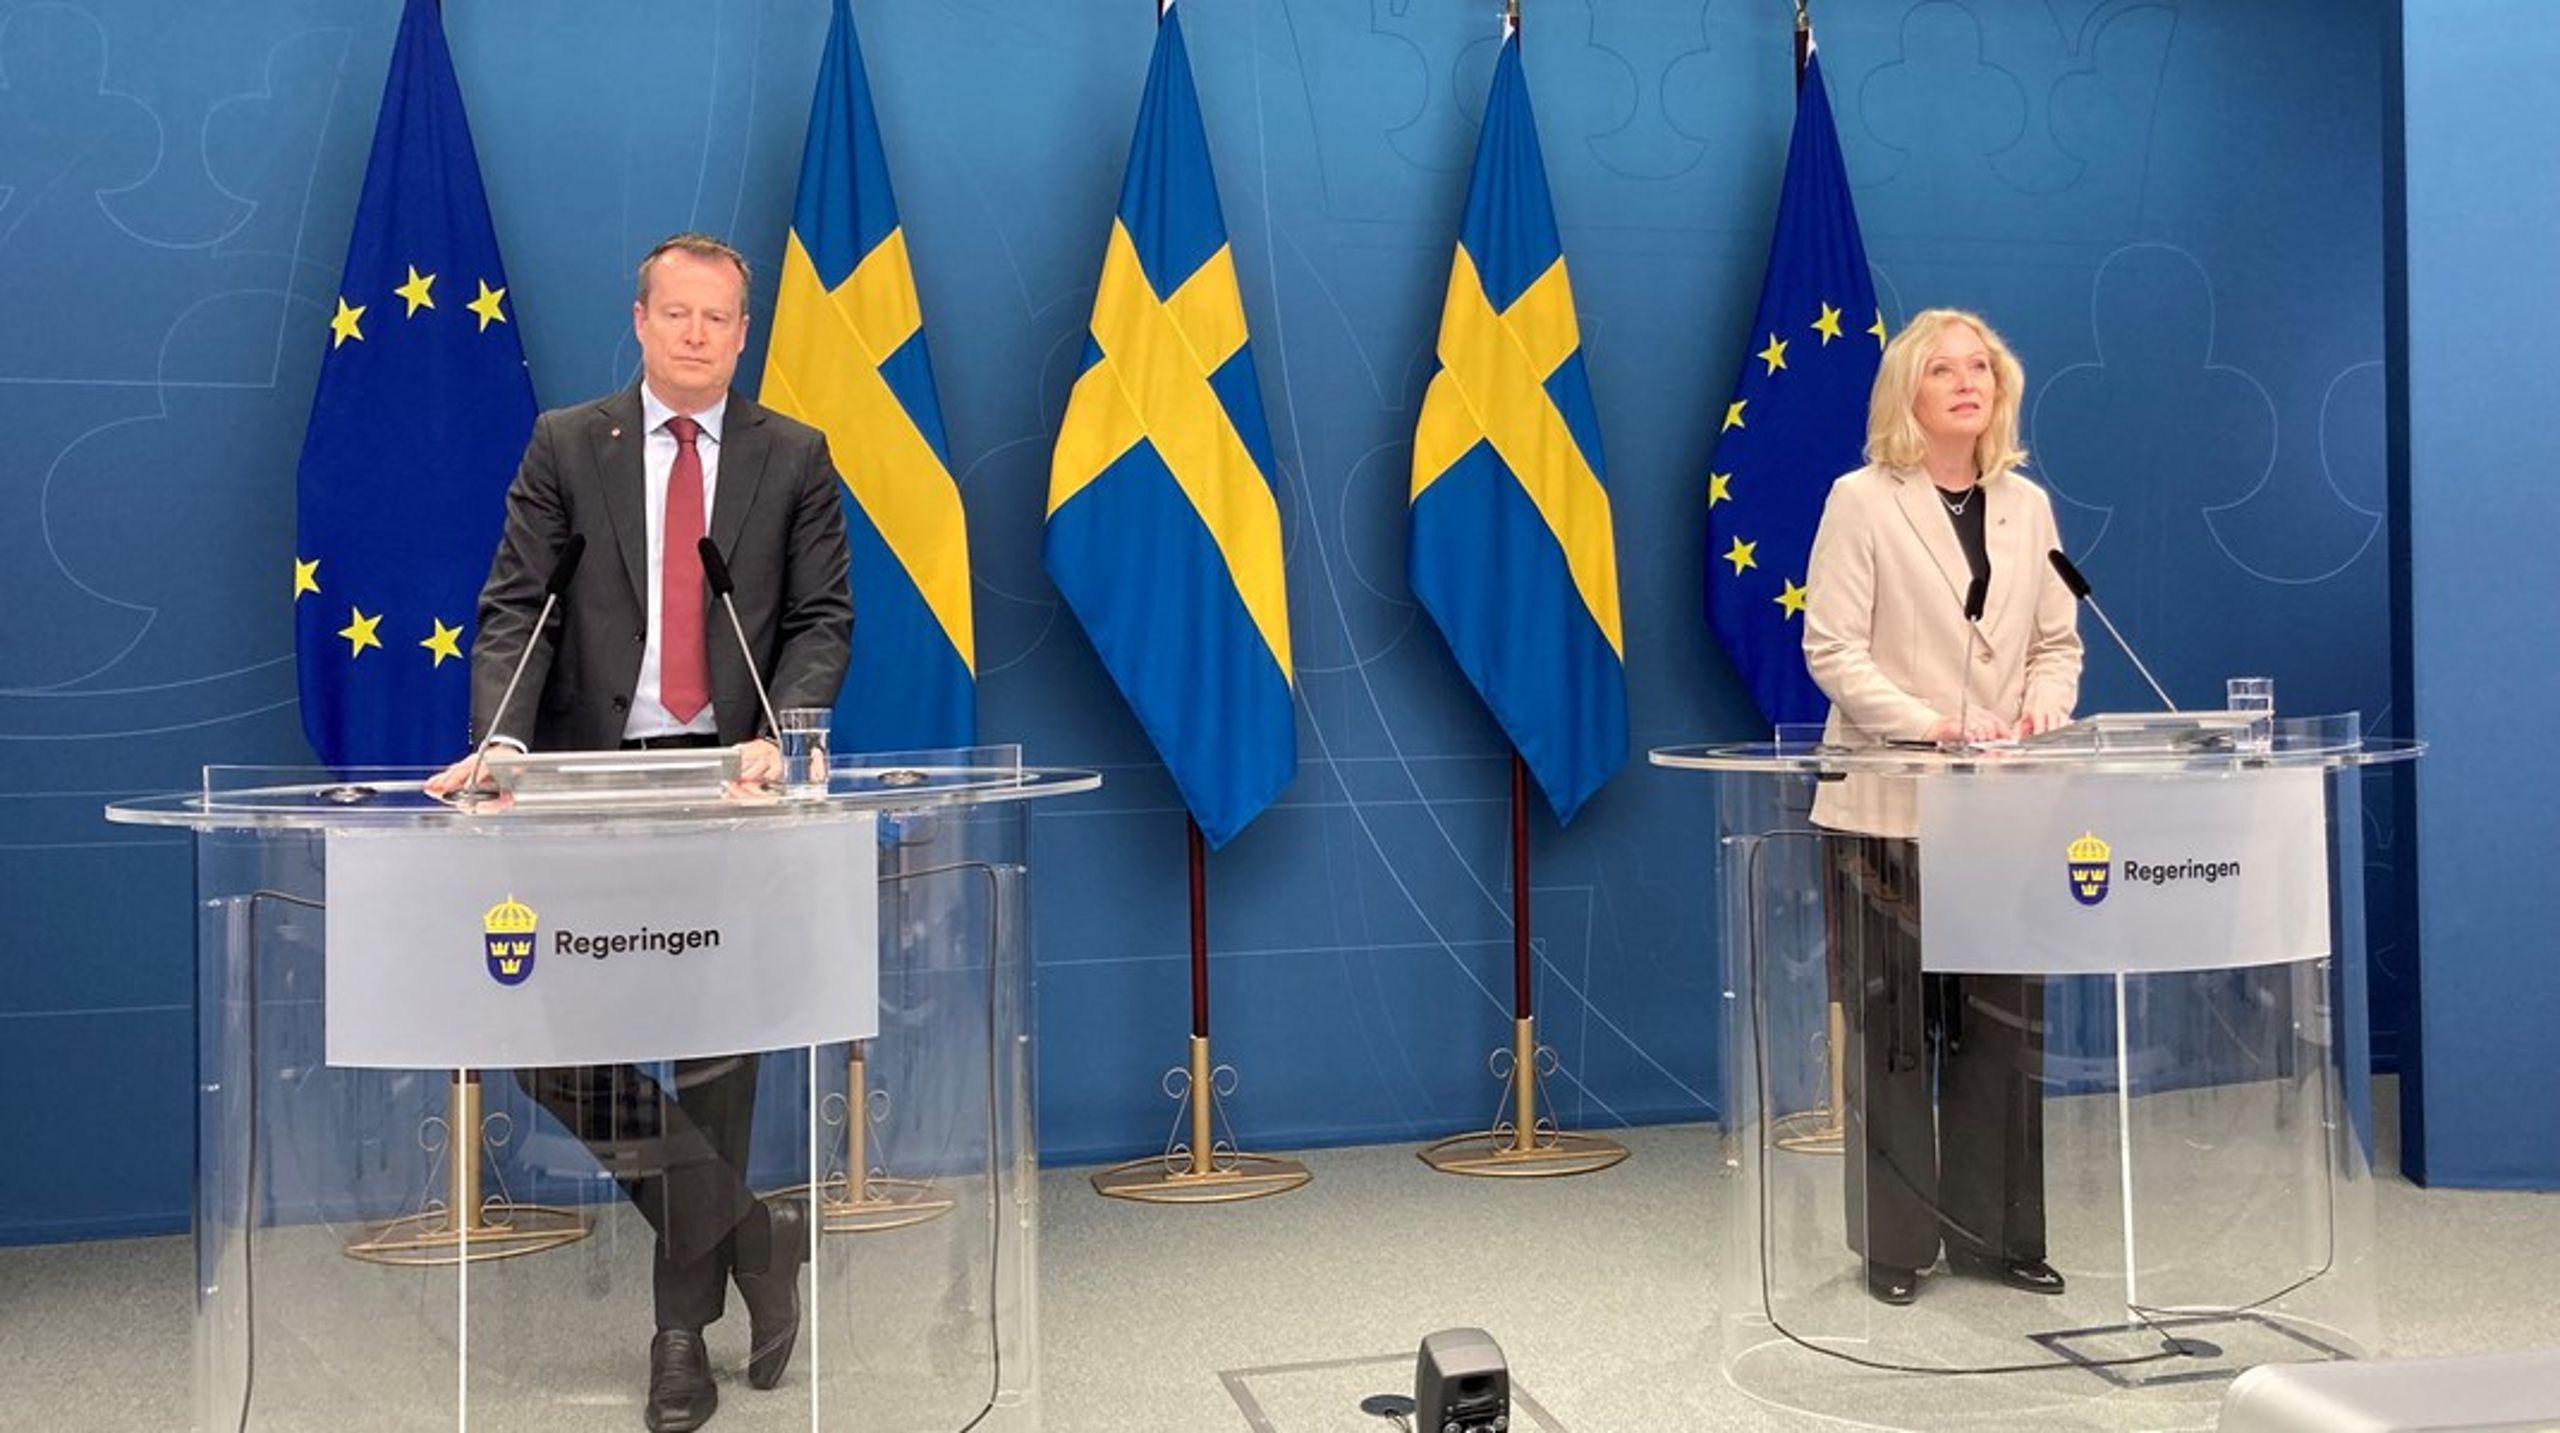 Ministrarna Anders Ygeman och Jeanette Gustafsdotter presenterade nyligen de demokratikriterier som regeringen vill ska gälla för civilsamhälle och trossamfund.&nbsp;&nbsp;